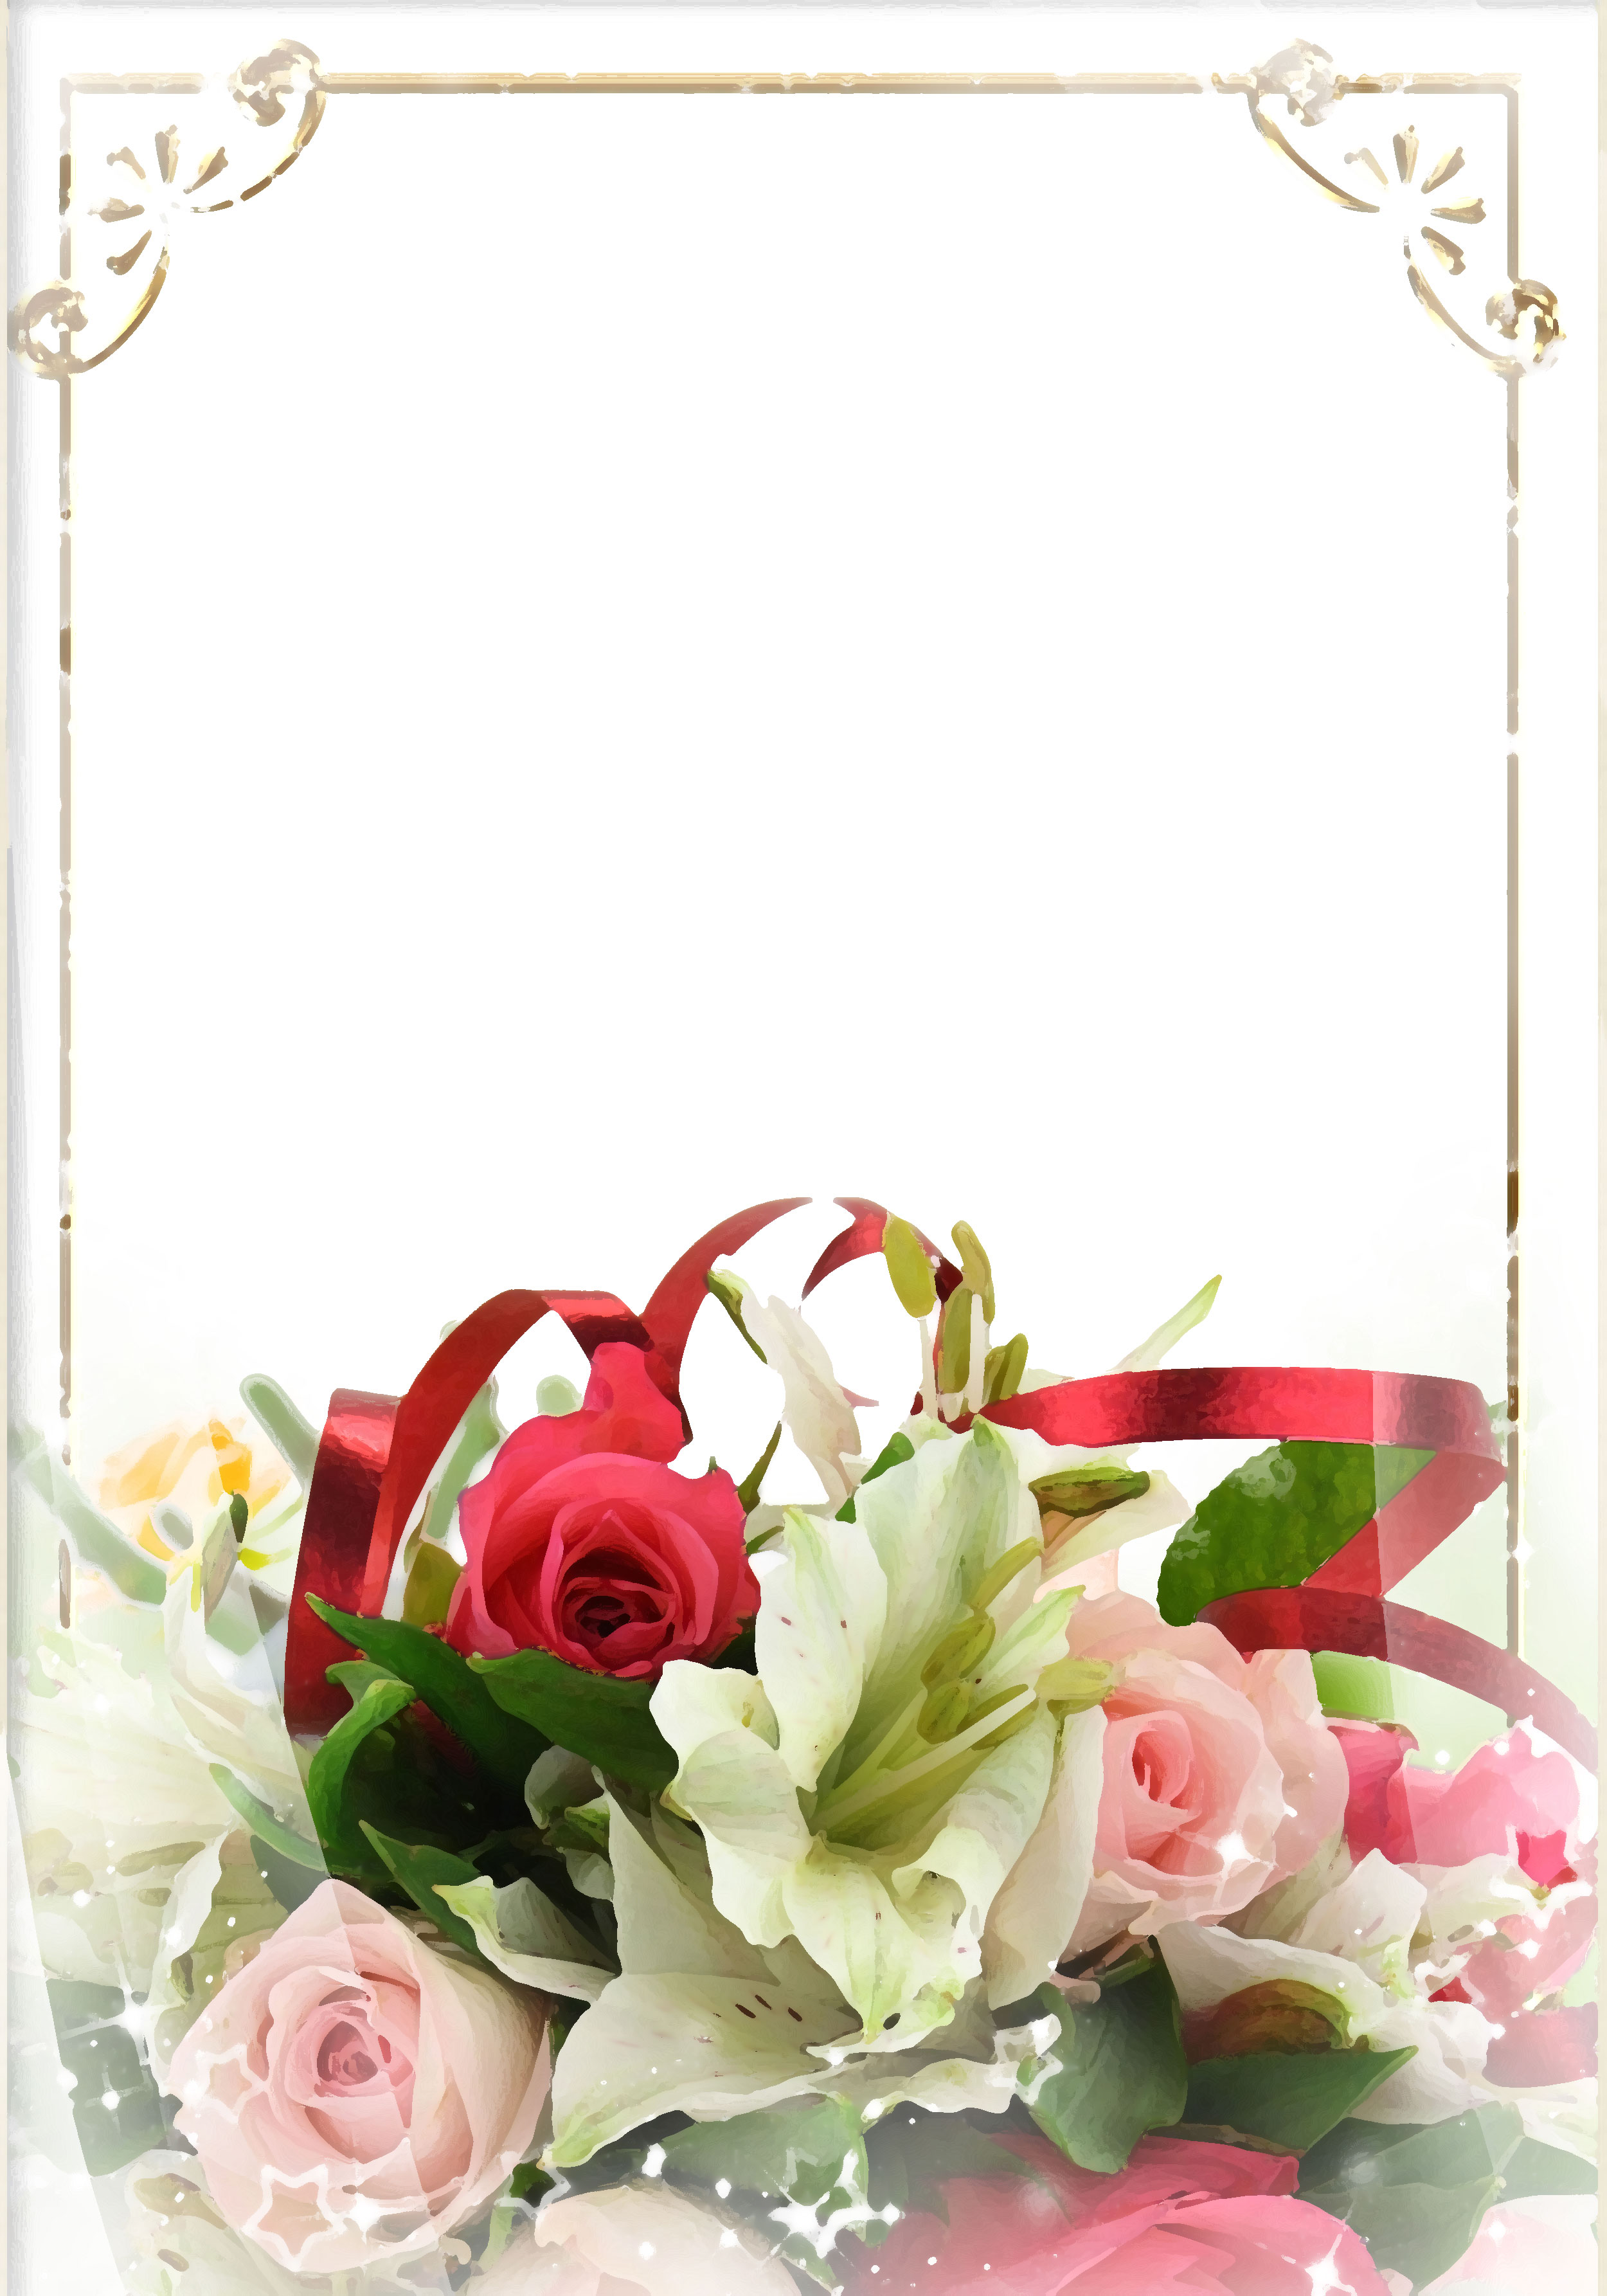 ピンクの花のイラスト フリー素材 壁紙 背景no 575 花束 バラ ユリ リボン